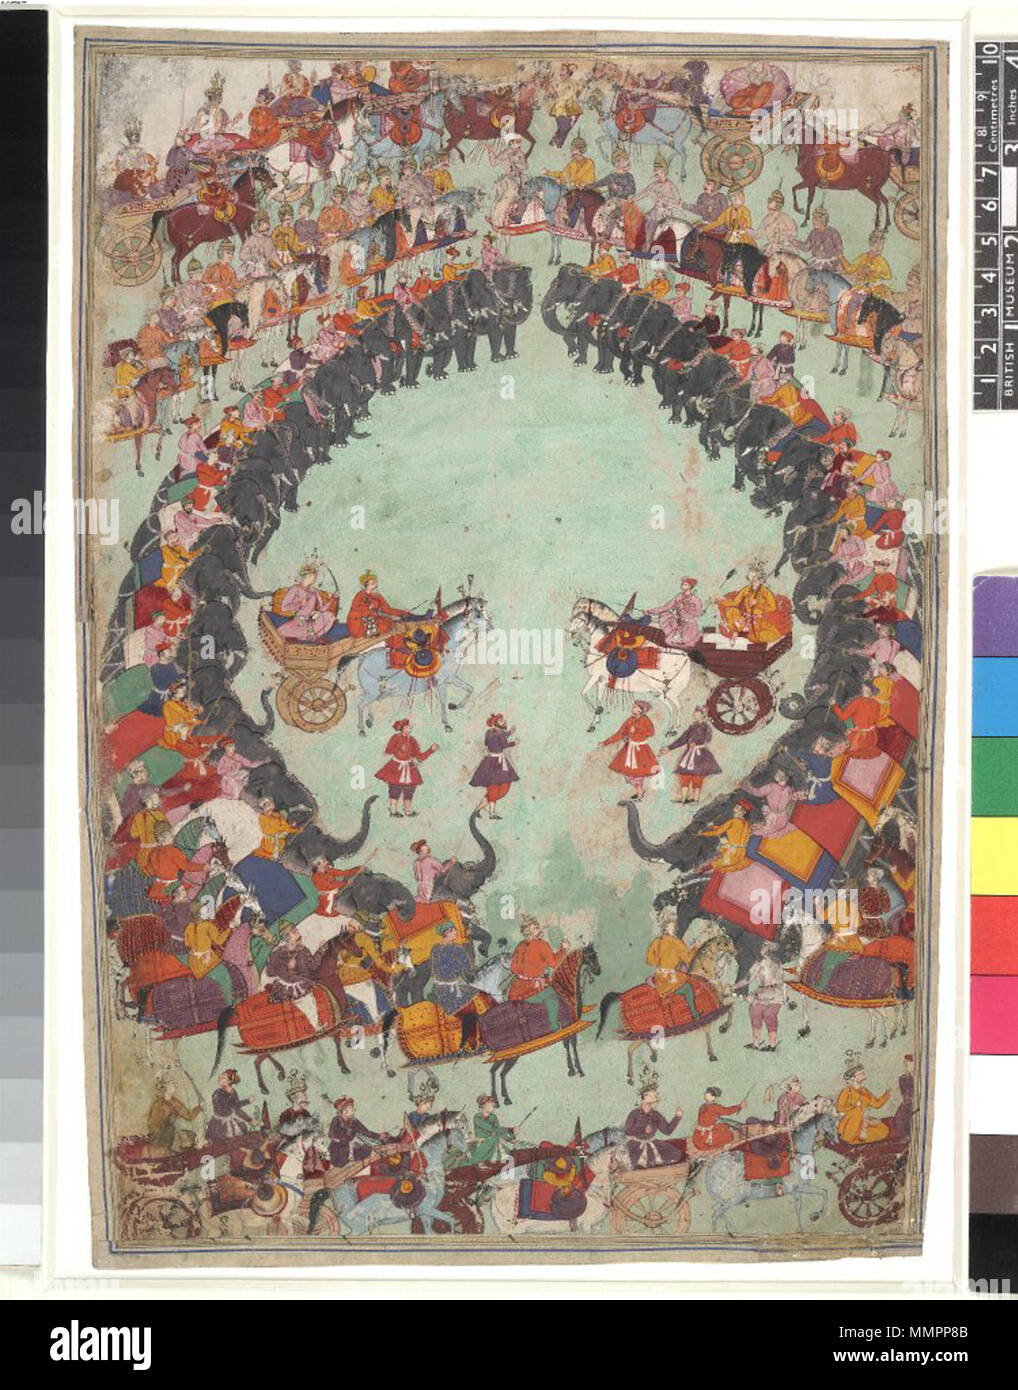 . Englisch: Arjuna und Bhima Vorbereitung auf die Schlacht, von einem Razmnaameh Mughal India, Anfang des 17. Jahrhunderts opak Aquarell und Tusche auf Papier dieser dramatischen Komposition veranschaulicht eine der letzten Schlachten vor der letzten großen Schlacht des Epos. Arjuna, der mächtige Krieger, und Bhima, der Stärkste der Pandava Brüder, steht auf tehir Wagen ihre Pfeile vorbereitet. Sie sind ein innerer Kreis von kriegselefanten und einem äußeren Kreis von Kavallerie auf gepanzerte Pferde. Nach wie vor ist die Rüstung ist Mughal, im Gegensatz zu den "alten" wagen. Die geringe Größe der Figuren und Größe des Pag Stockfoto